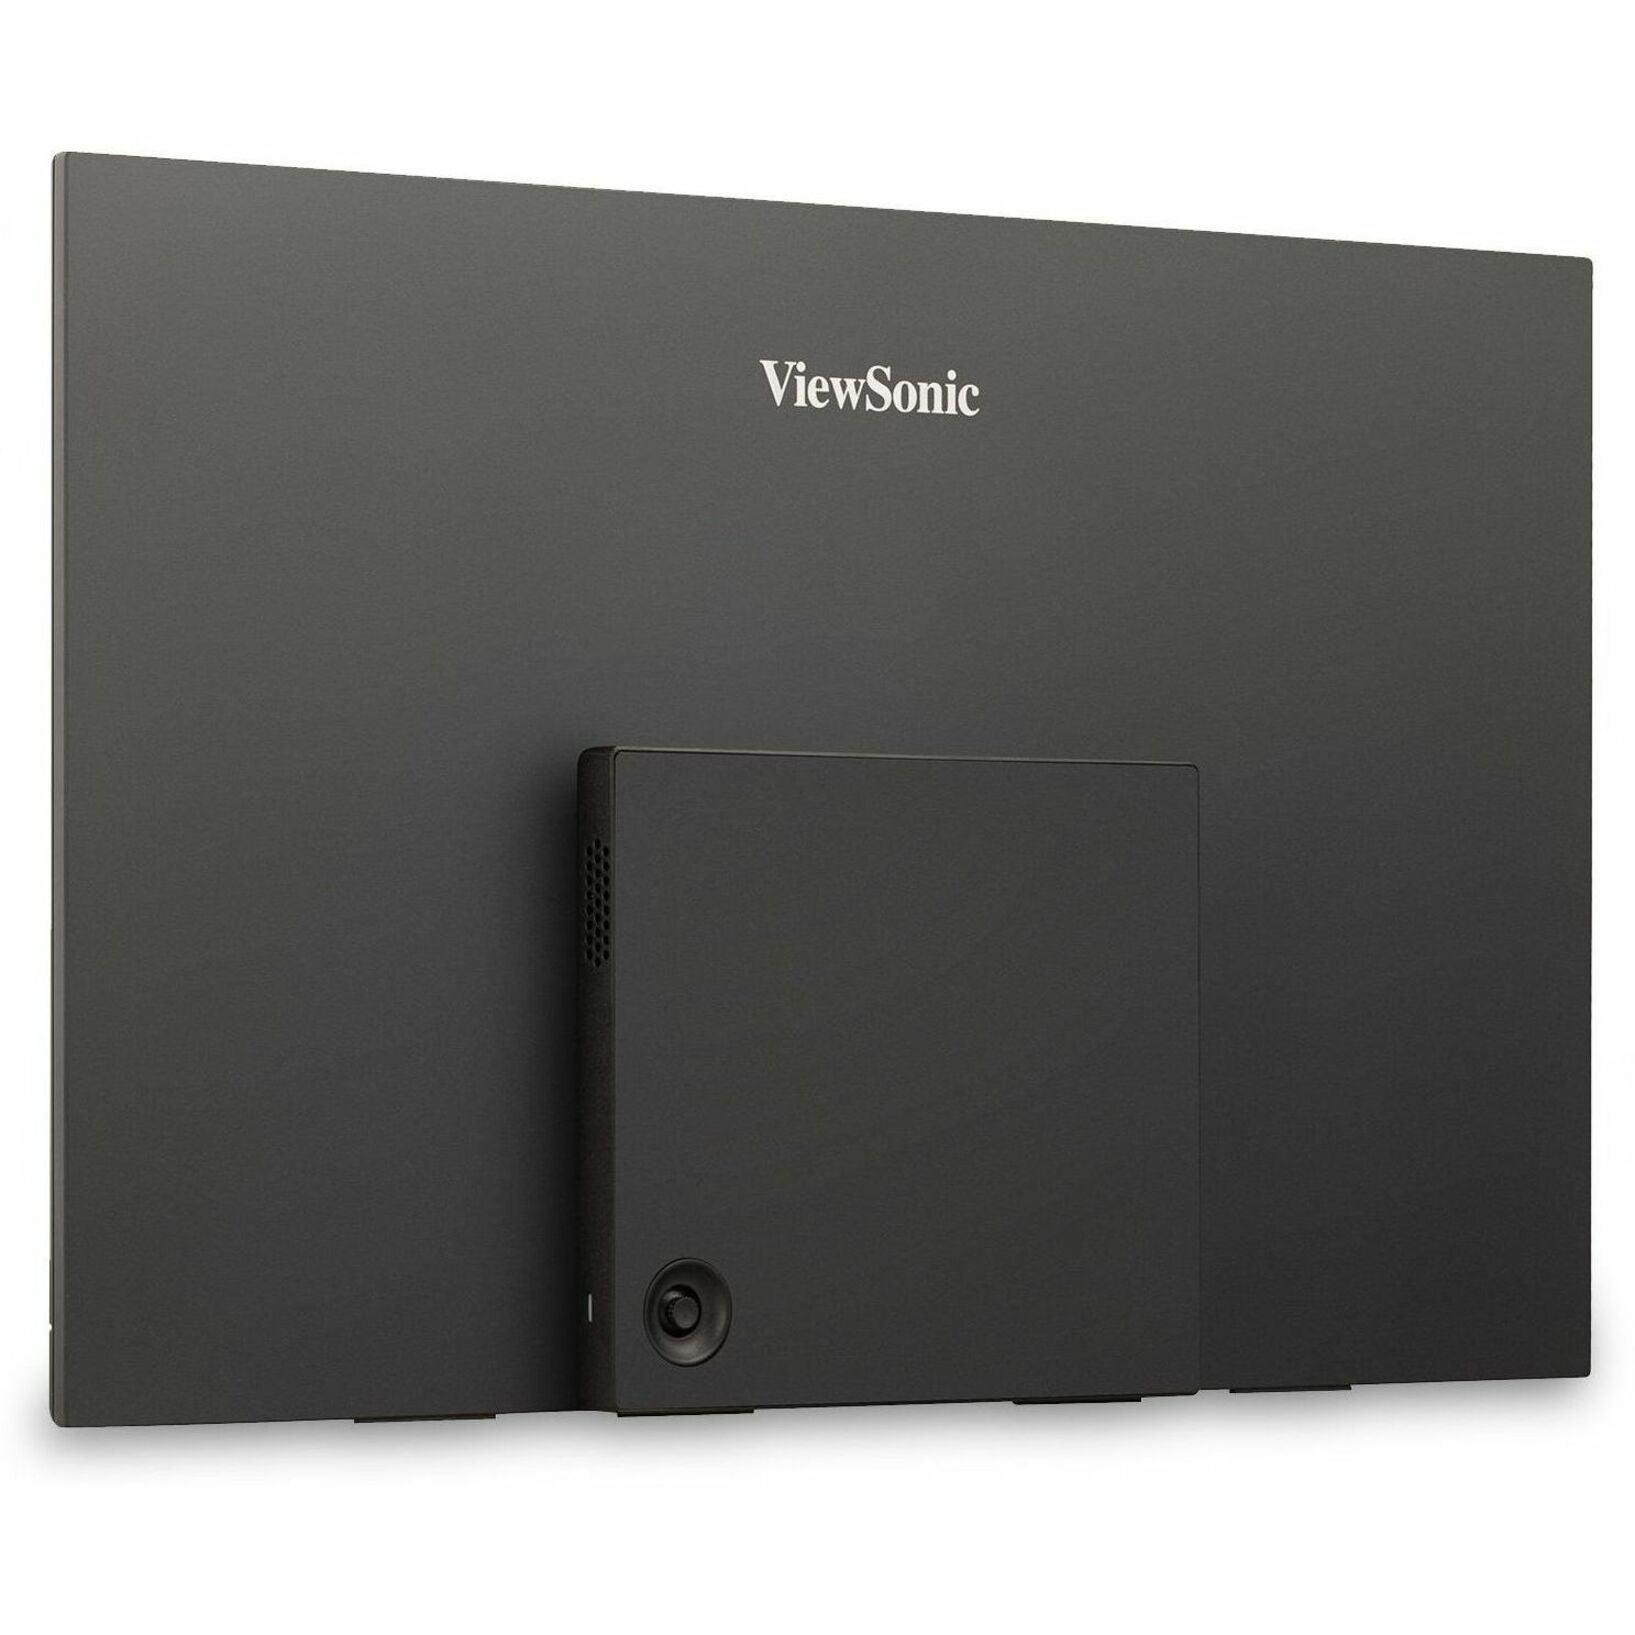 ViewSonic VX1655-4K 游戏 LED 显示器 15.6" 4K UHD 可携式显示器，带 60W USB C 和迷你 HDMI  视达品牌。将视达品牌翻译成英文。